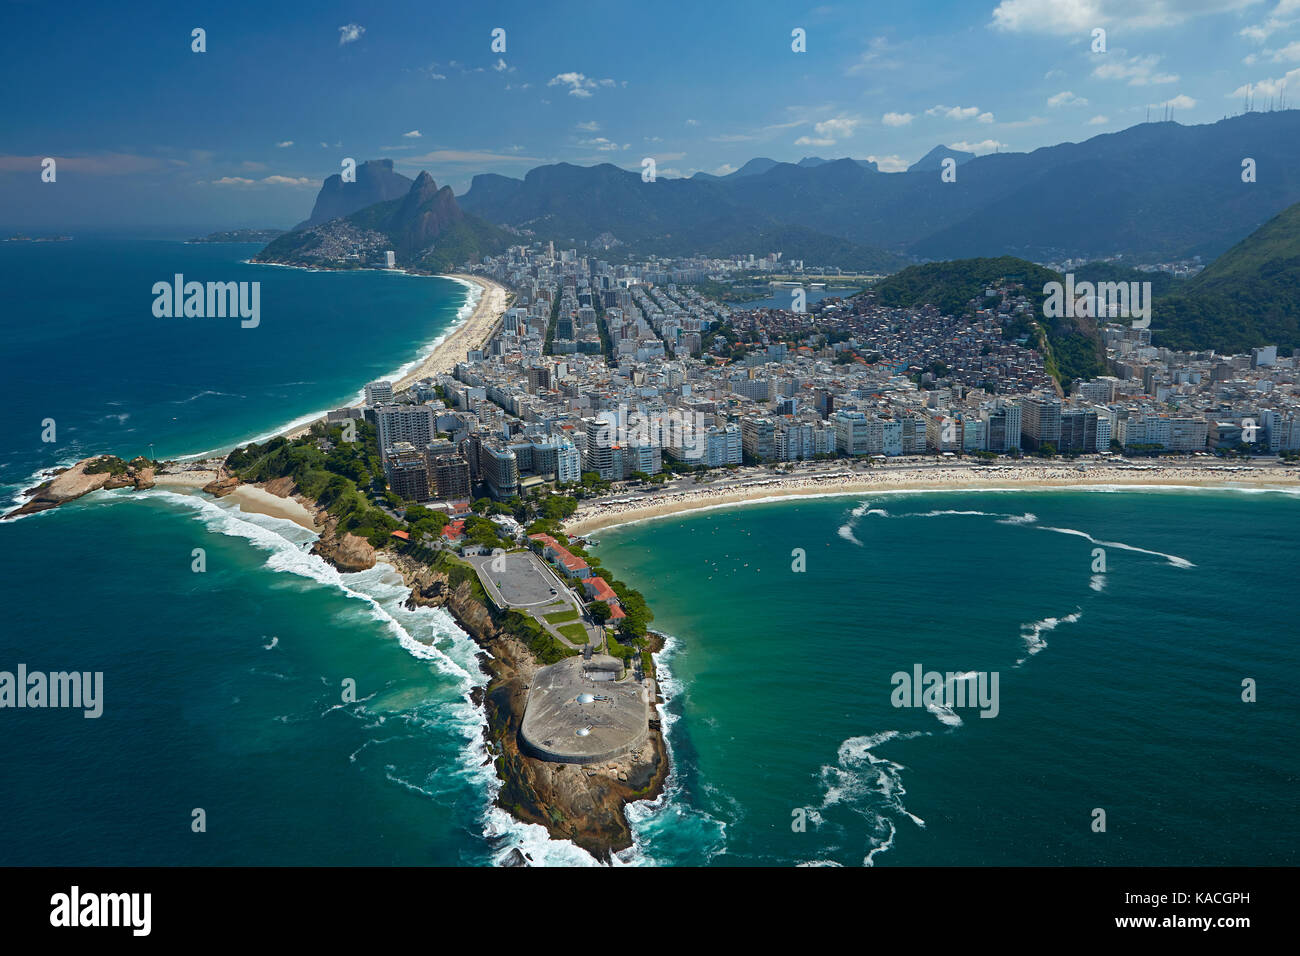 Fort de Copacabana, Ipanema beach (en haut à gauche), et la plage de Copacabana (droite), Rio de Janeiro, Brésil, Amérique du sud - vue aérienne Banque D'Images